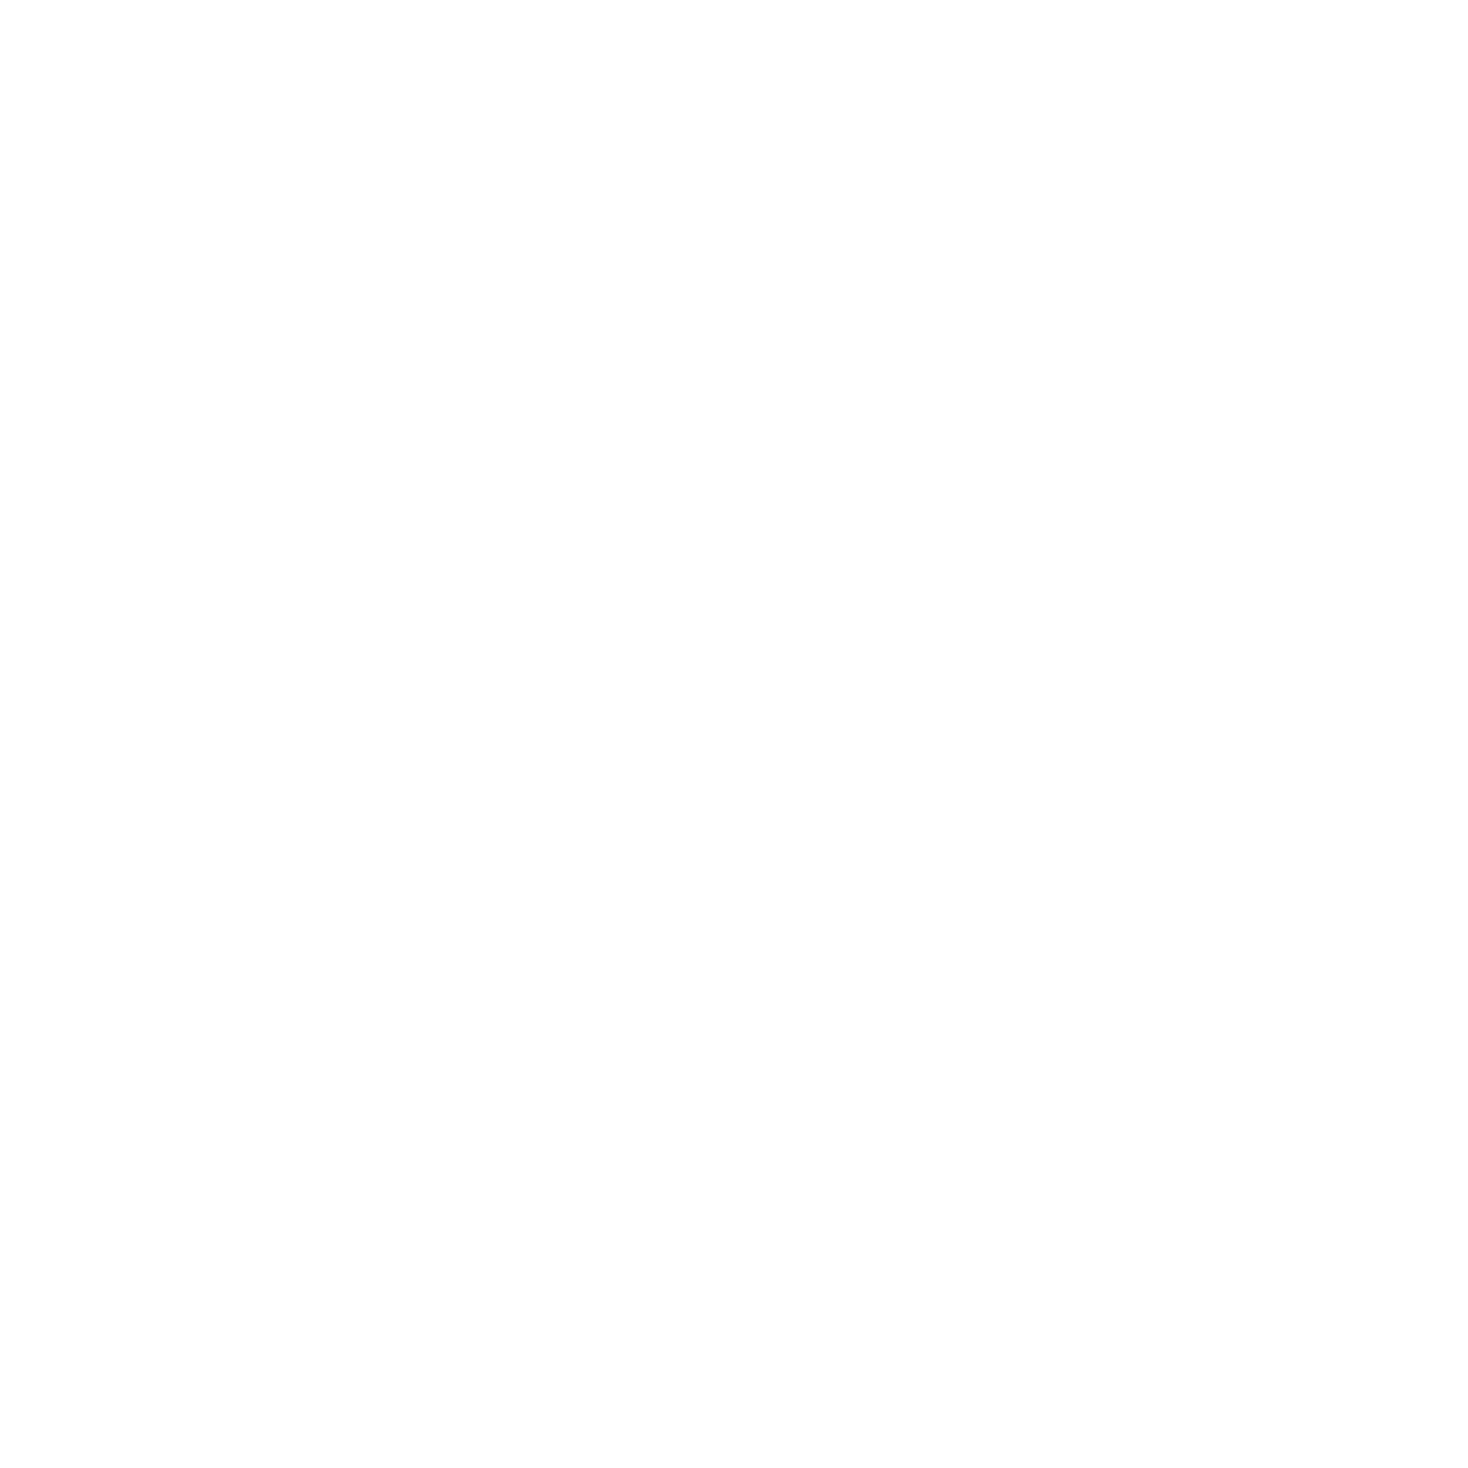 Obayashi logo for dark backgrounds (transparent PNG)